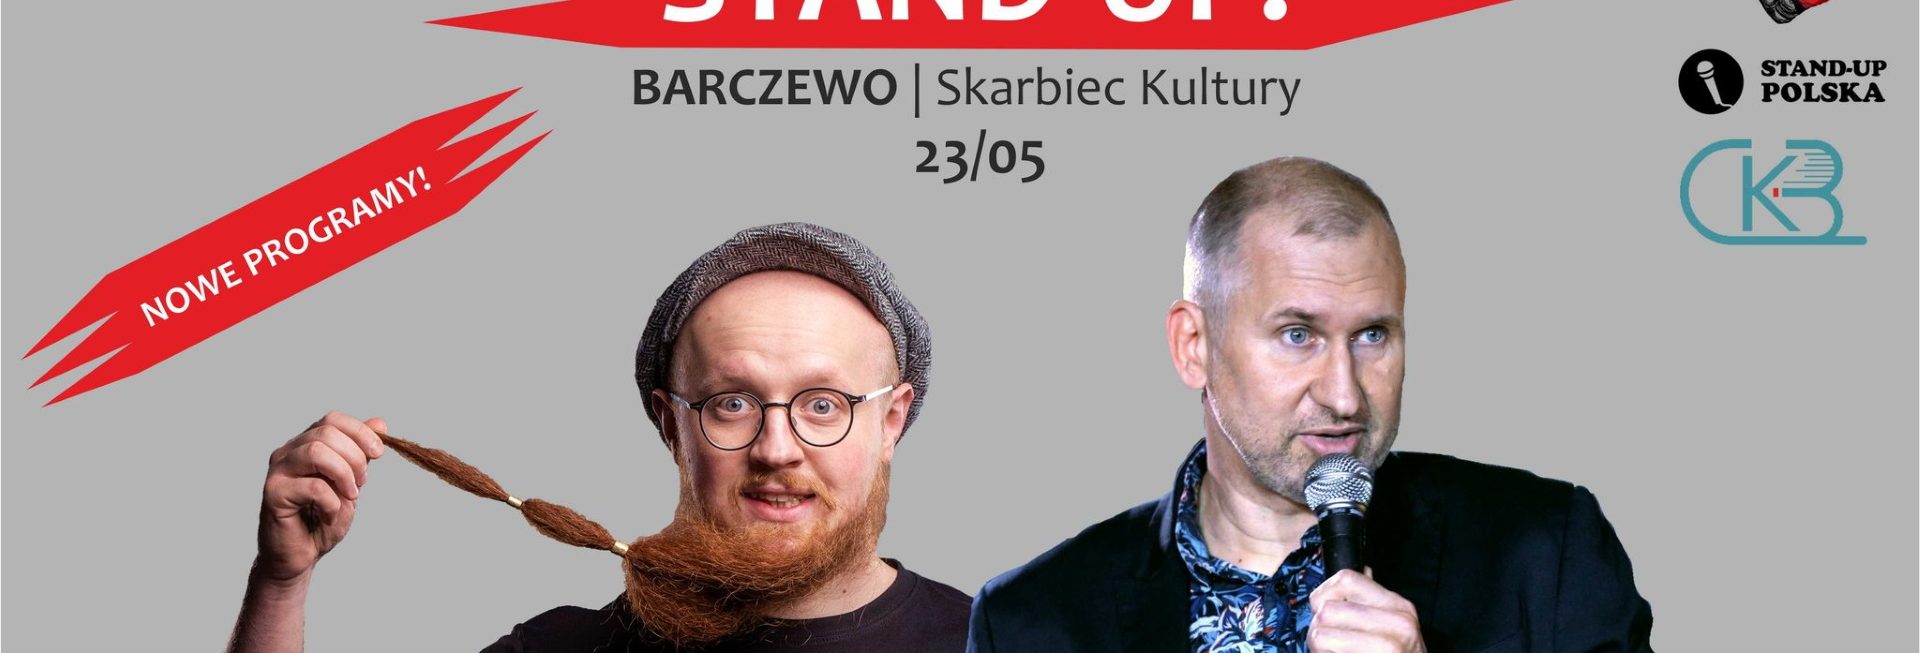 Plakat graficzny zapraszający do Barczewa na występ Stand-up Wojciech FIEDORCZUK & Arkadiusz JAKSA Jakszewicz Barczewo 2022.